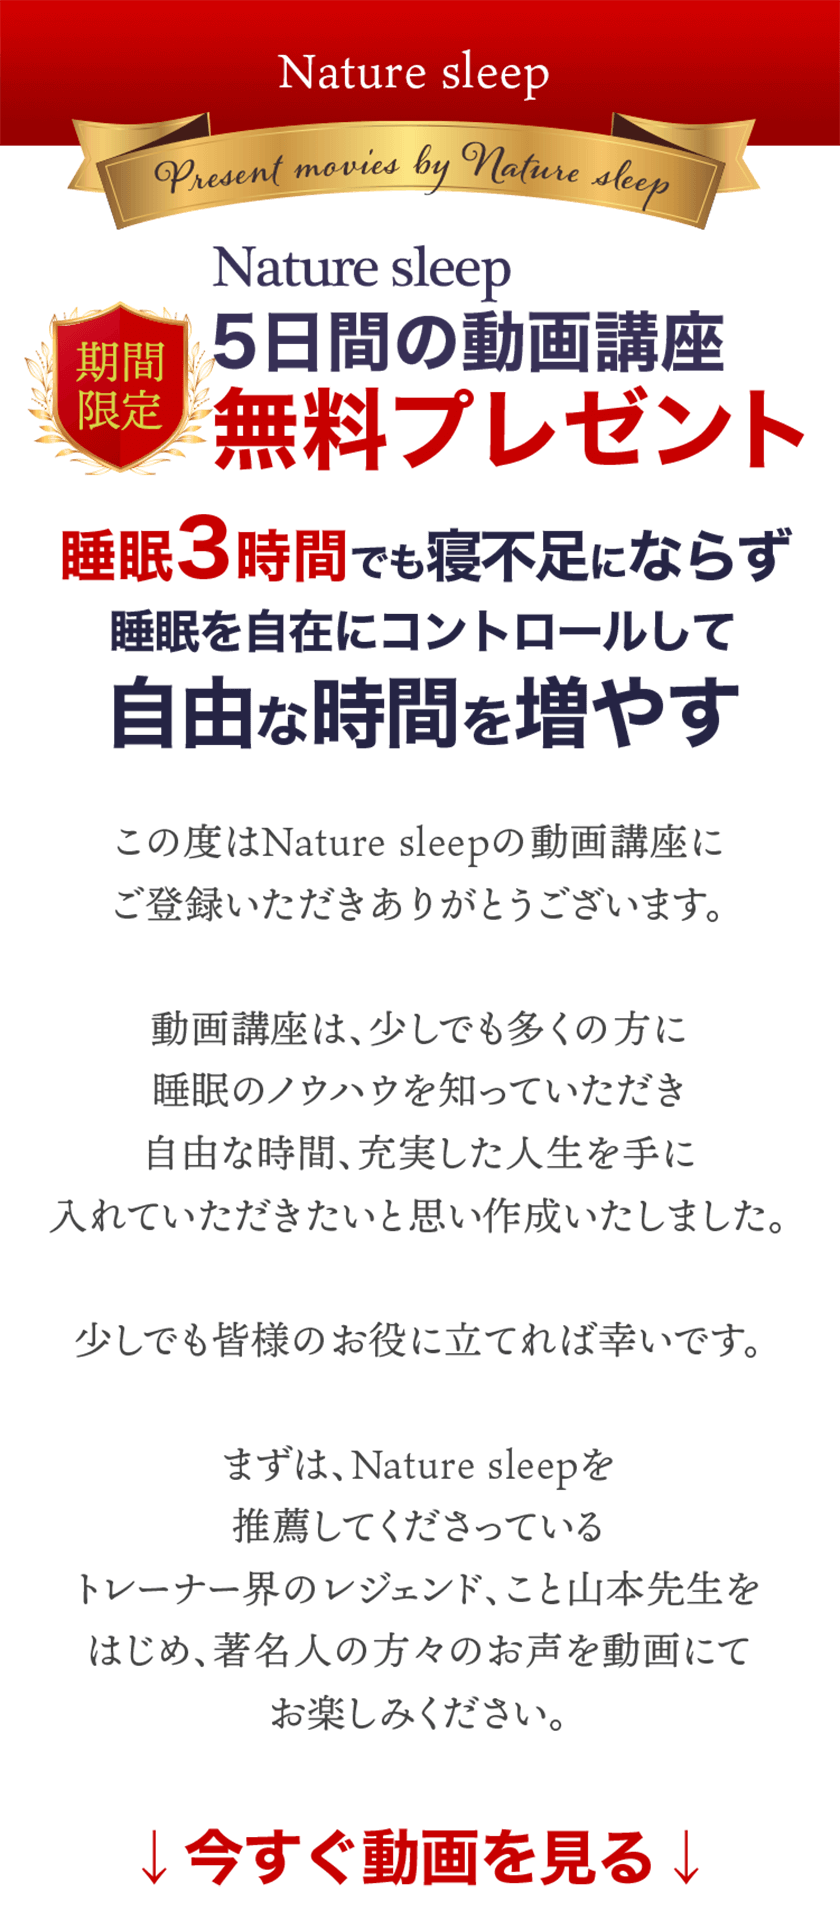 期間限定 Nature sleep 5日間の動画講座 無料プレゼント